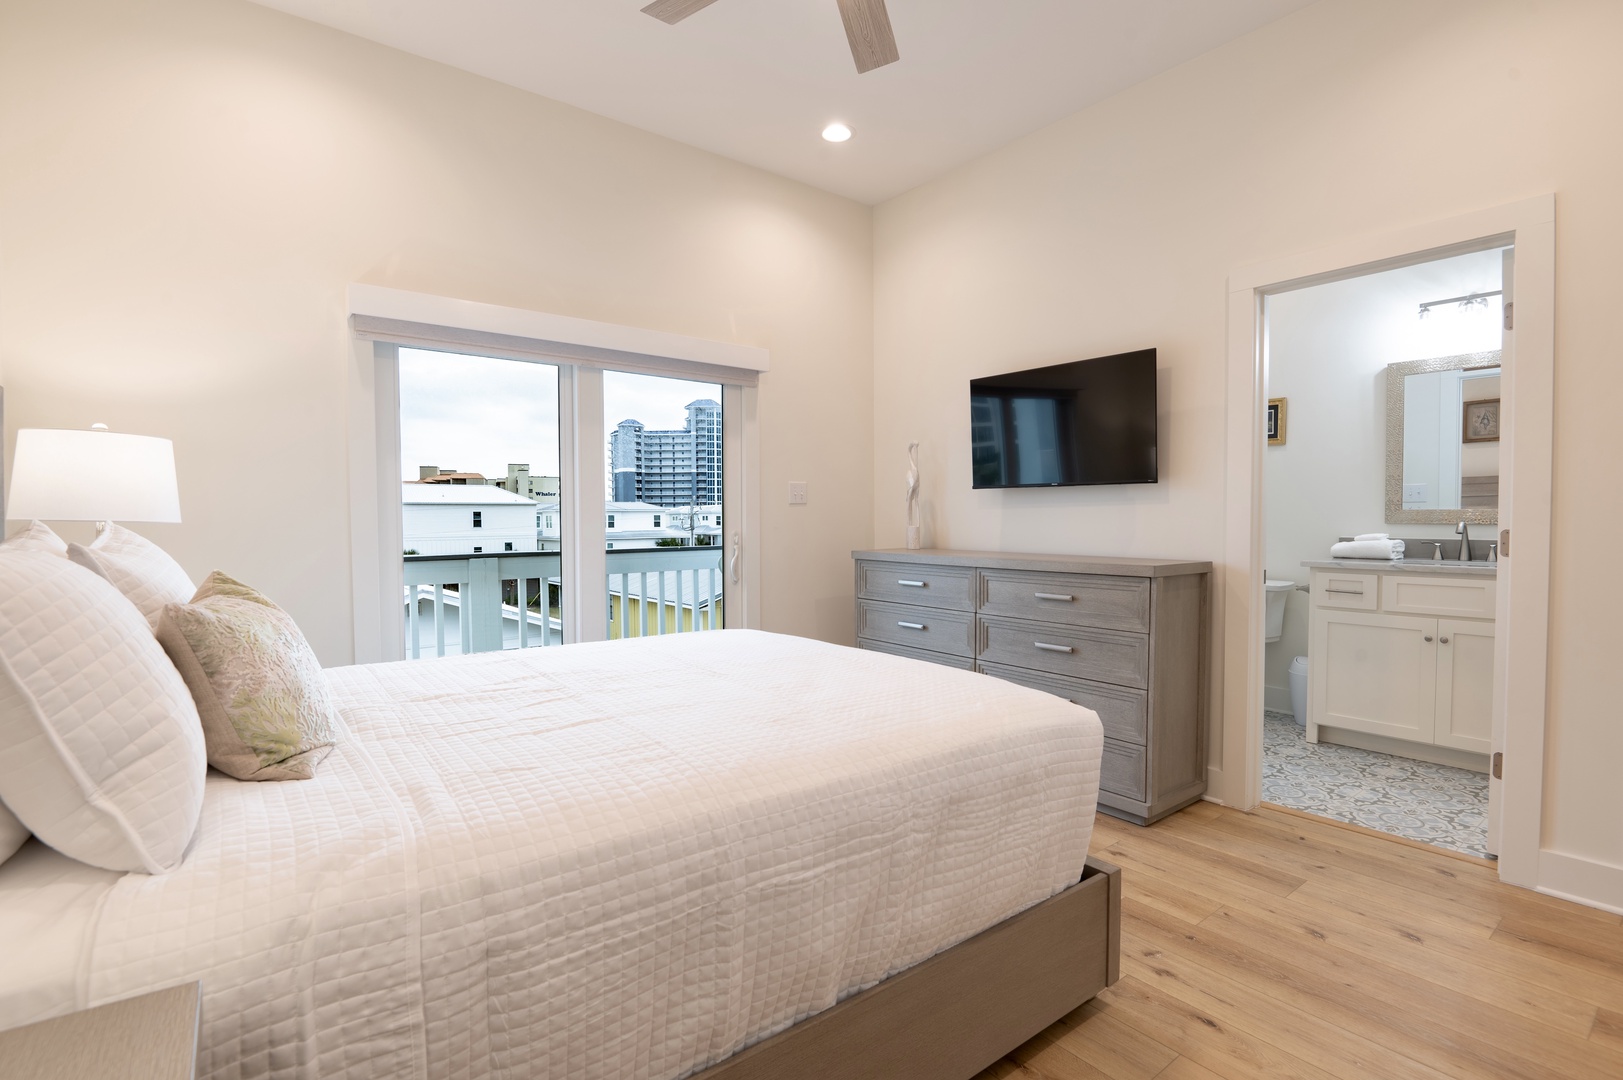 3rd floor - Bedroom 3 with Queen bed, Smart TV, balcony, and en-suite